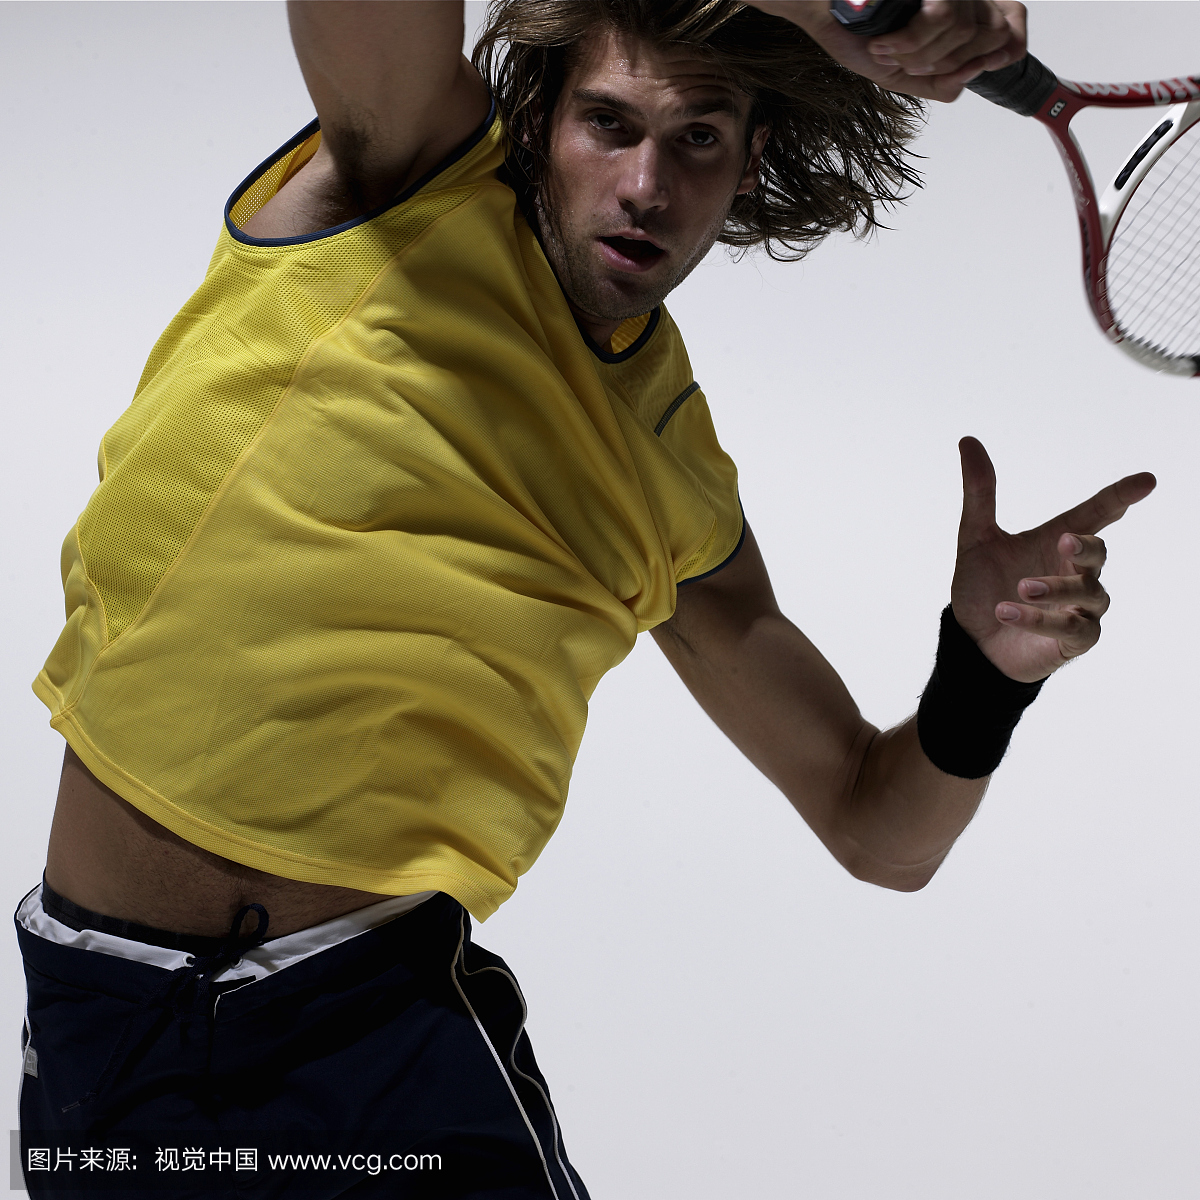 年轻的男性网球运动员摆动的球拍,肖像,特写镜